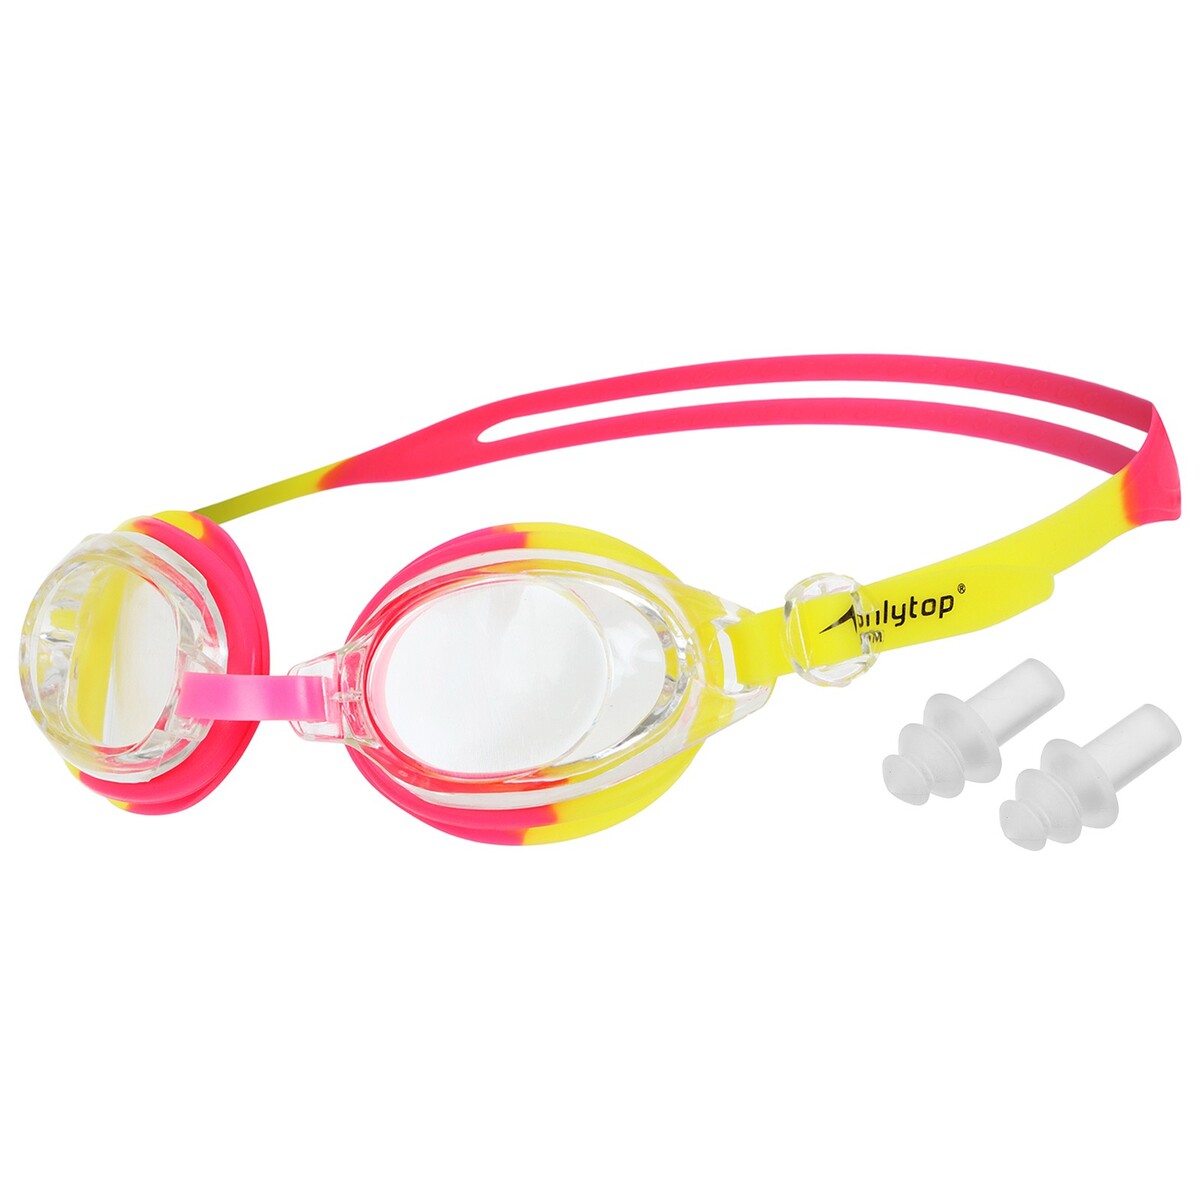 Очки для плавания детские onlytop, беруши, цвет красный/желтый очки для плавания детские tyr swimple tie dye jr lgswtd 420 синие линзы мультиколор оправа